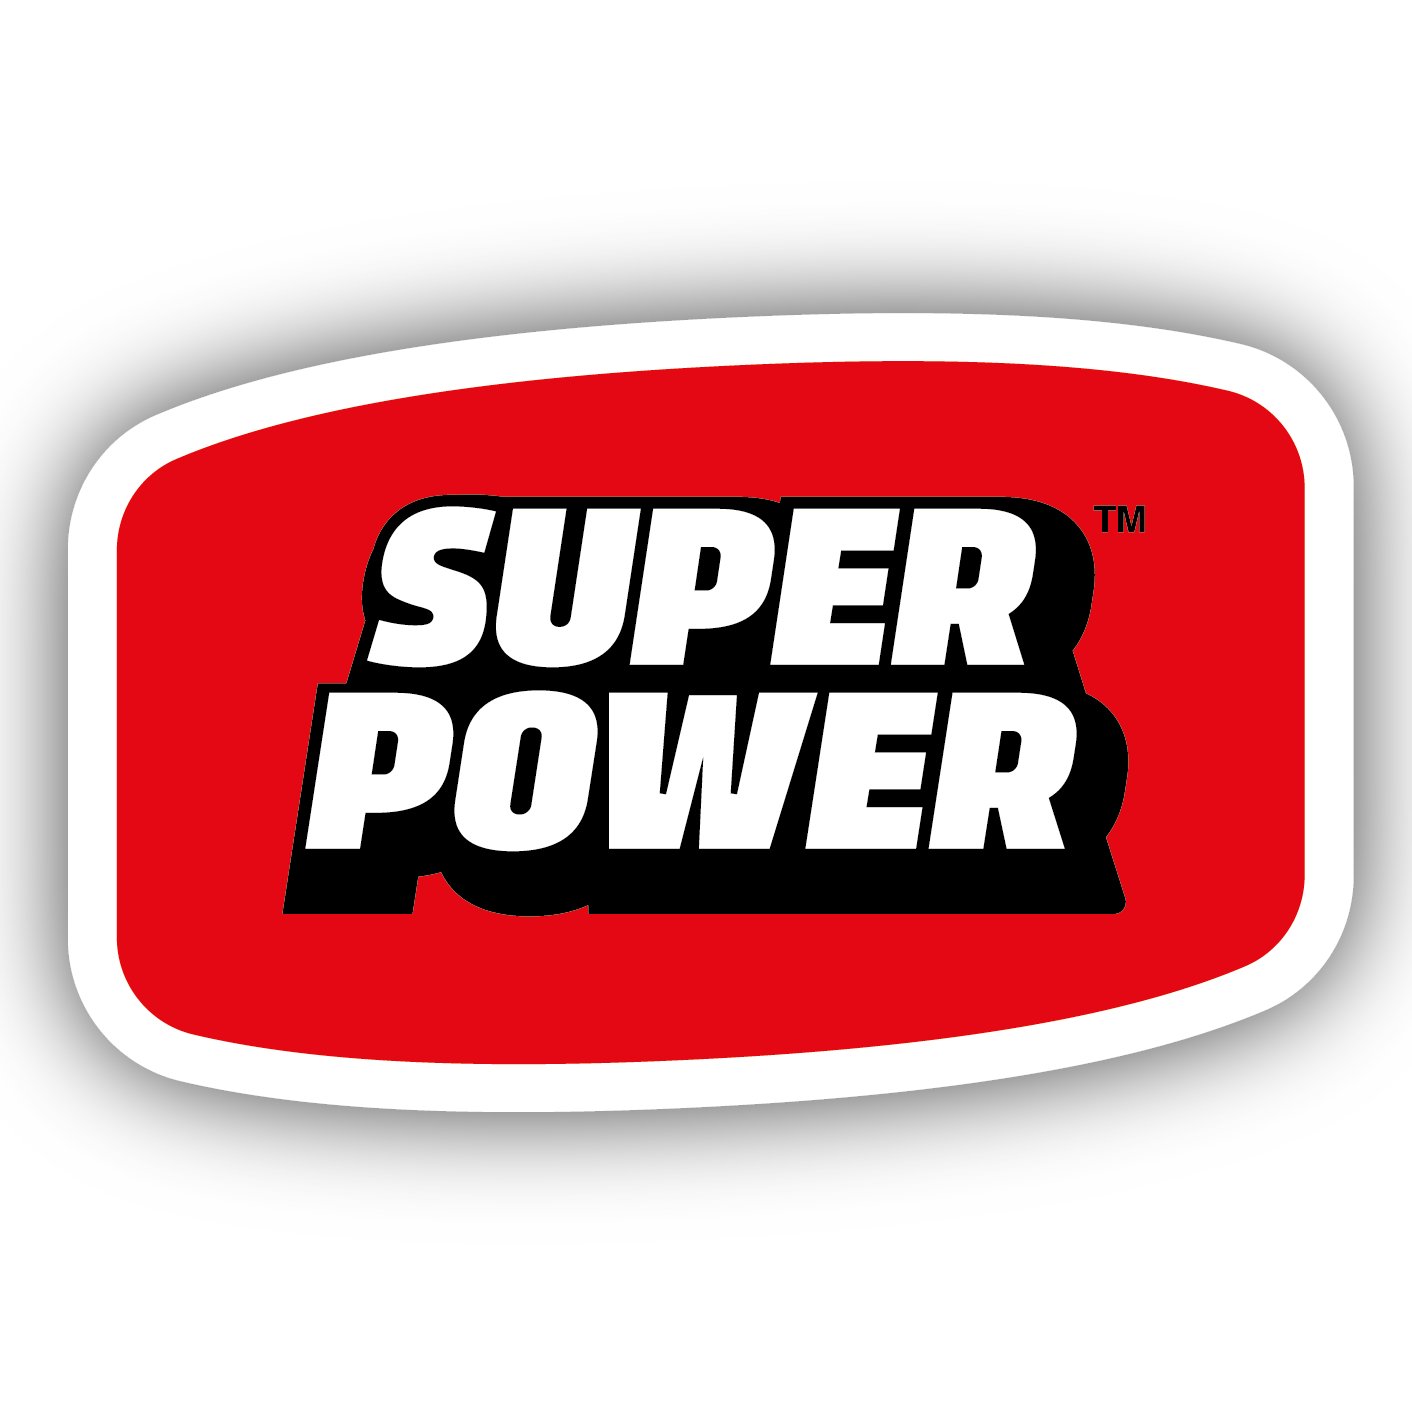 Супер пауэр. Super Power. Ric Power super. Superpower значок. Super powerful.